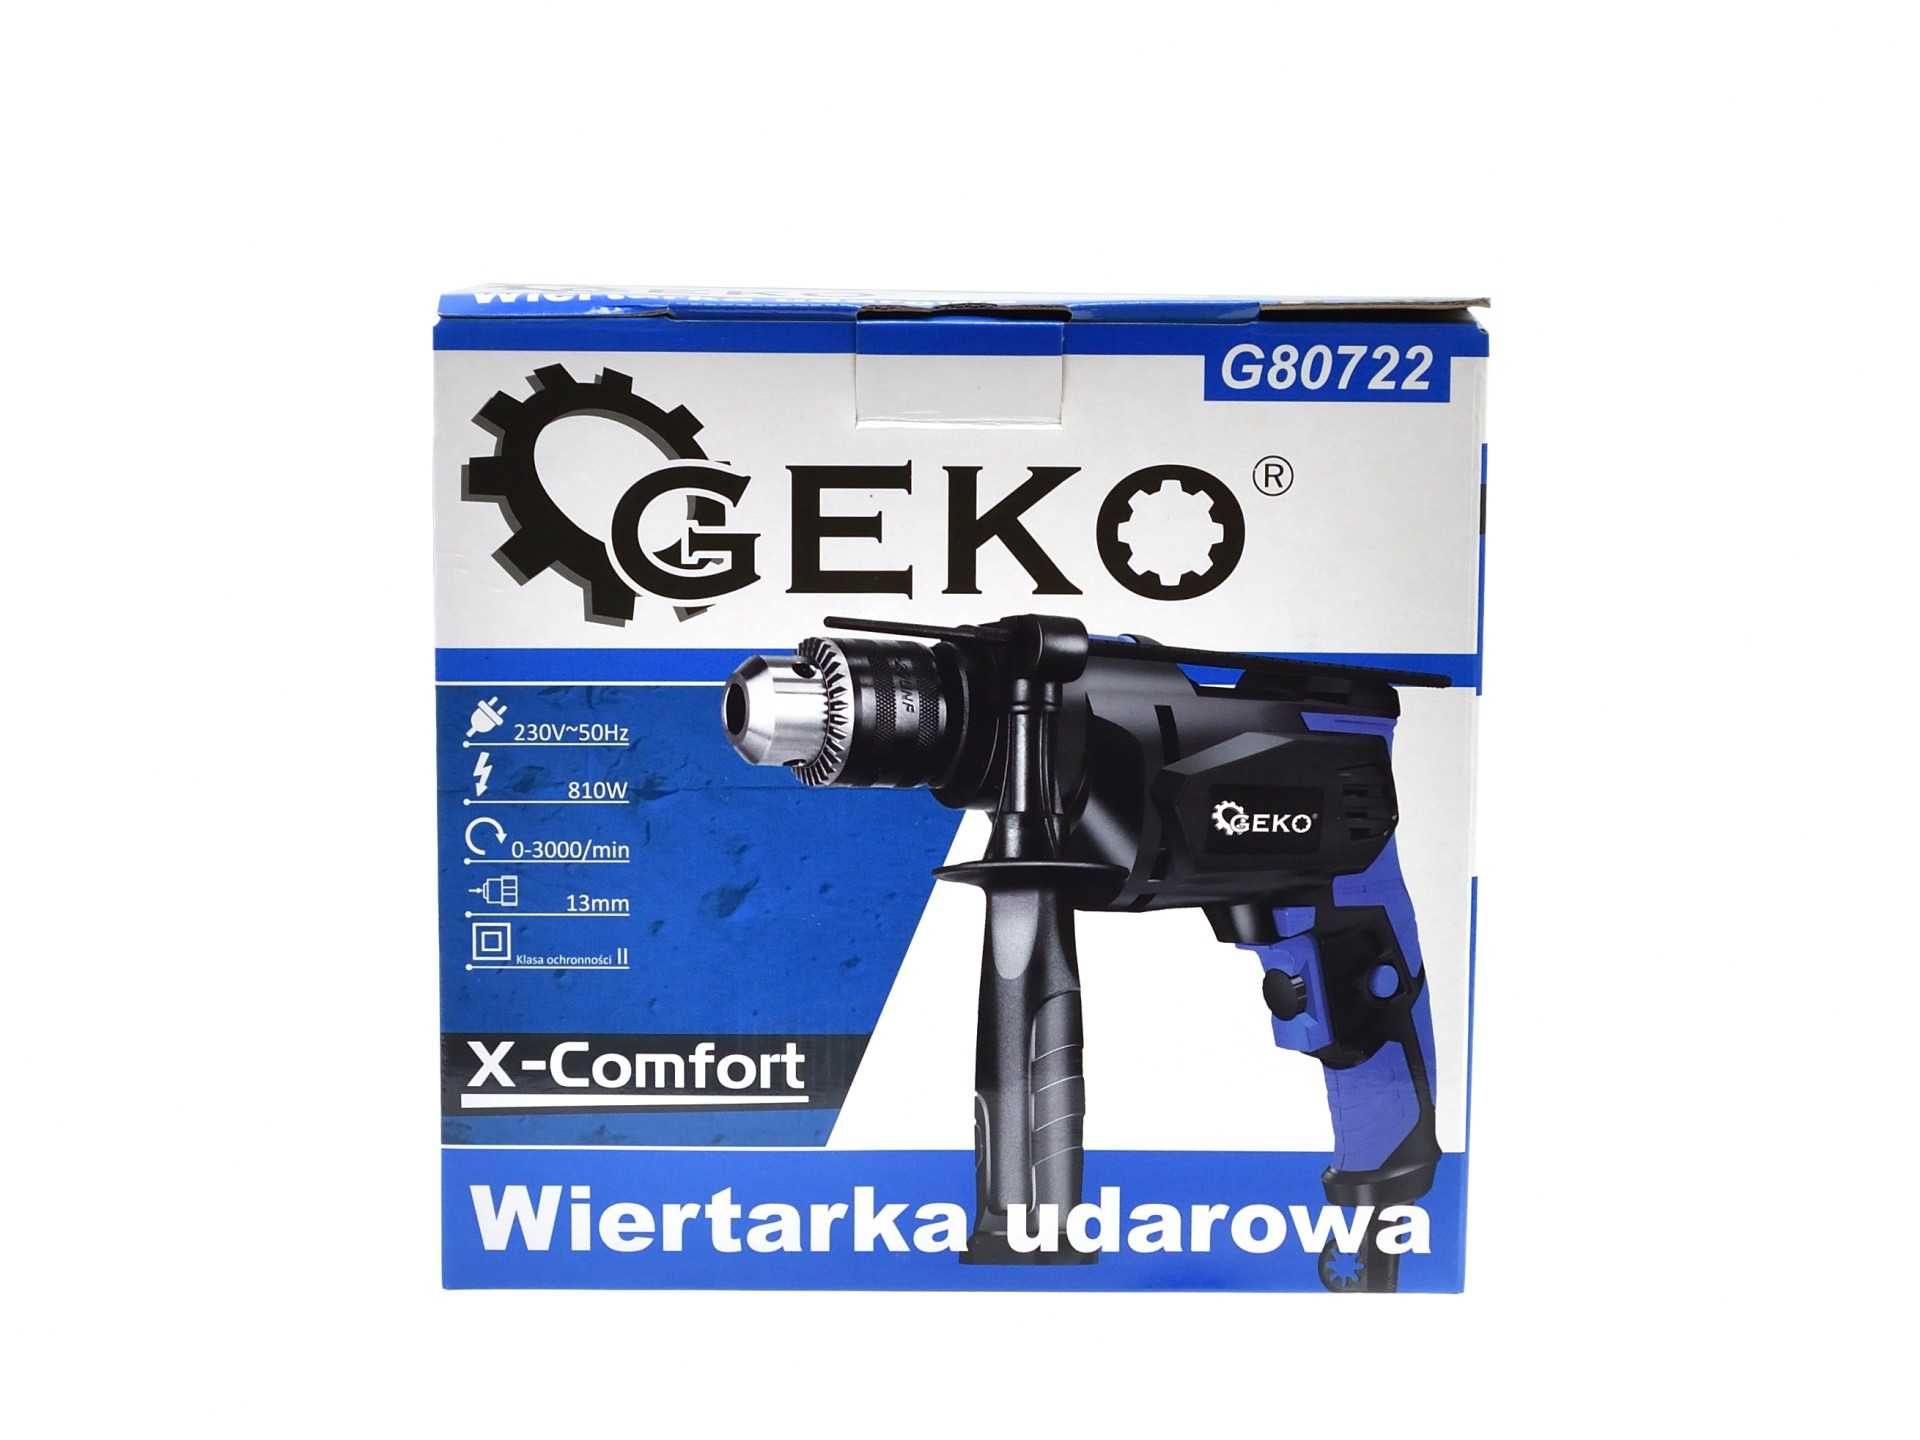 Wiertarka udarowa 13mm 810W X-Comfort Geko